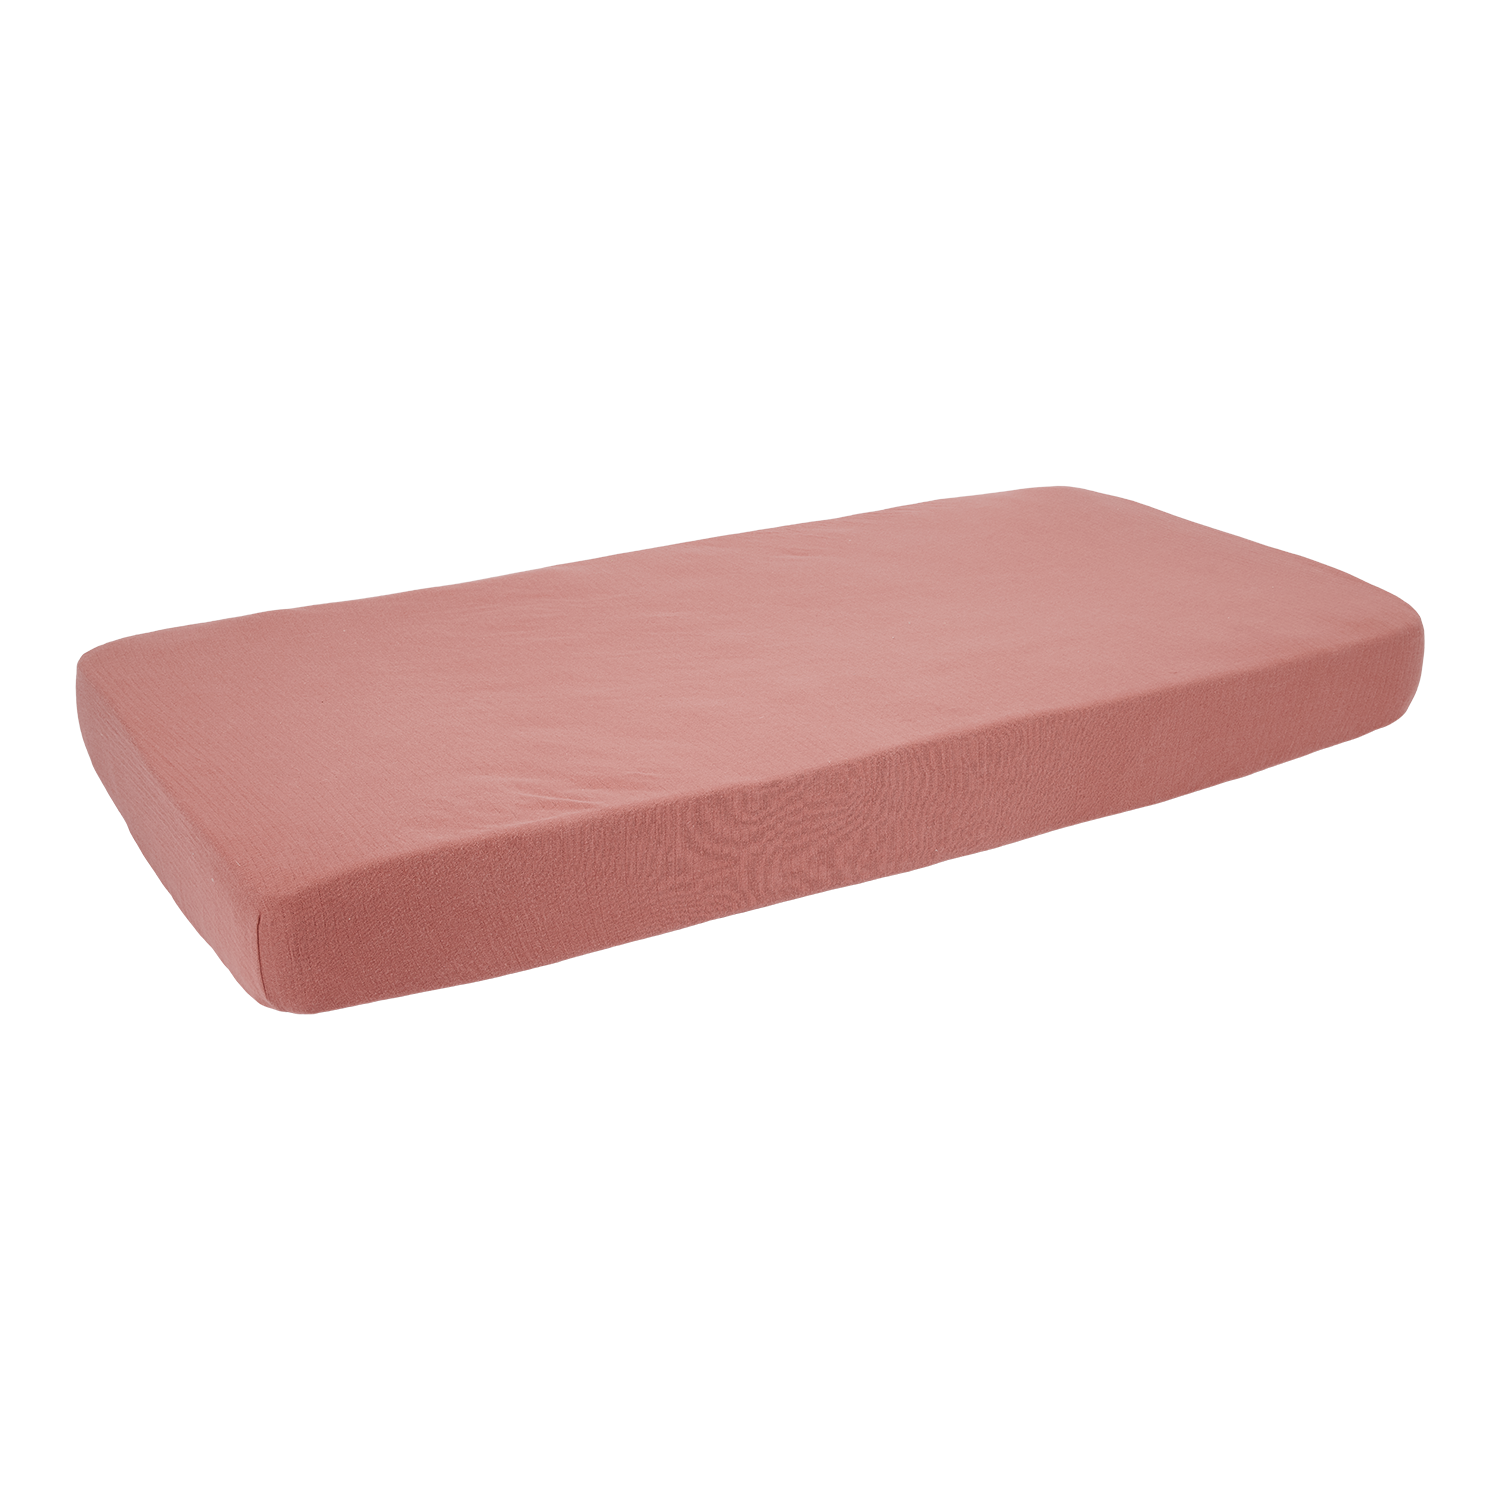 Spannbetttuch für Babybett Pure pink blush (60x120 cm)